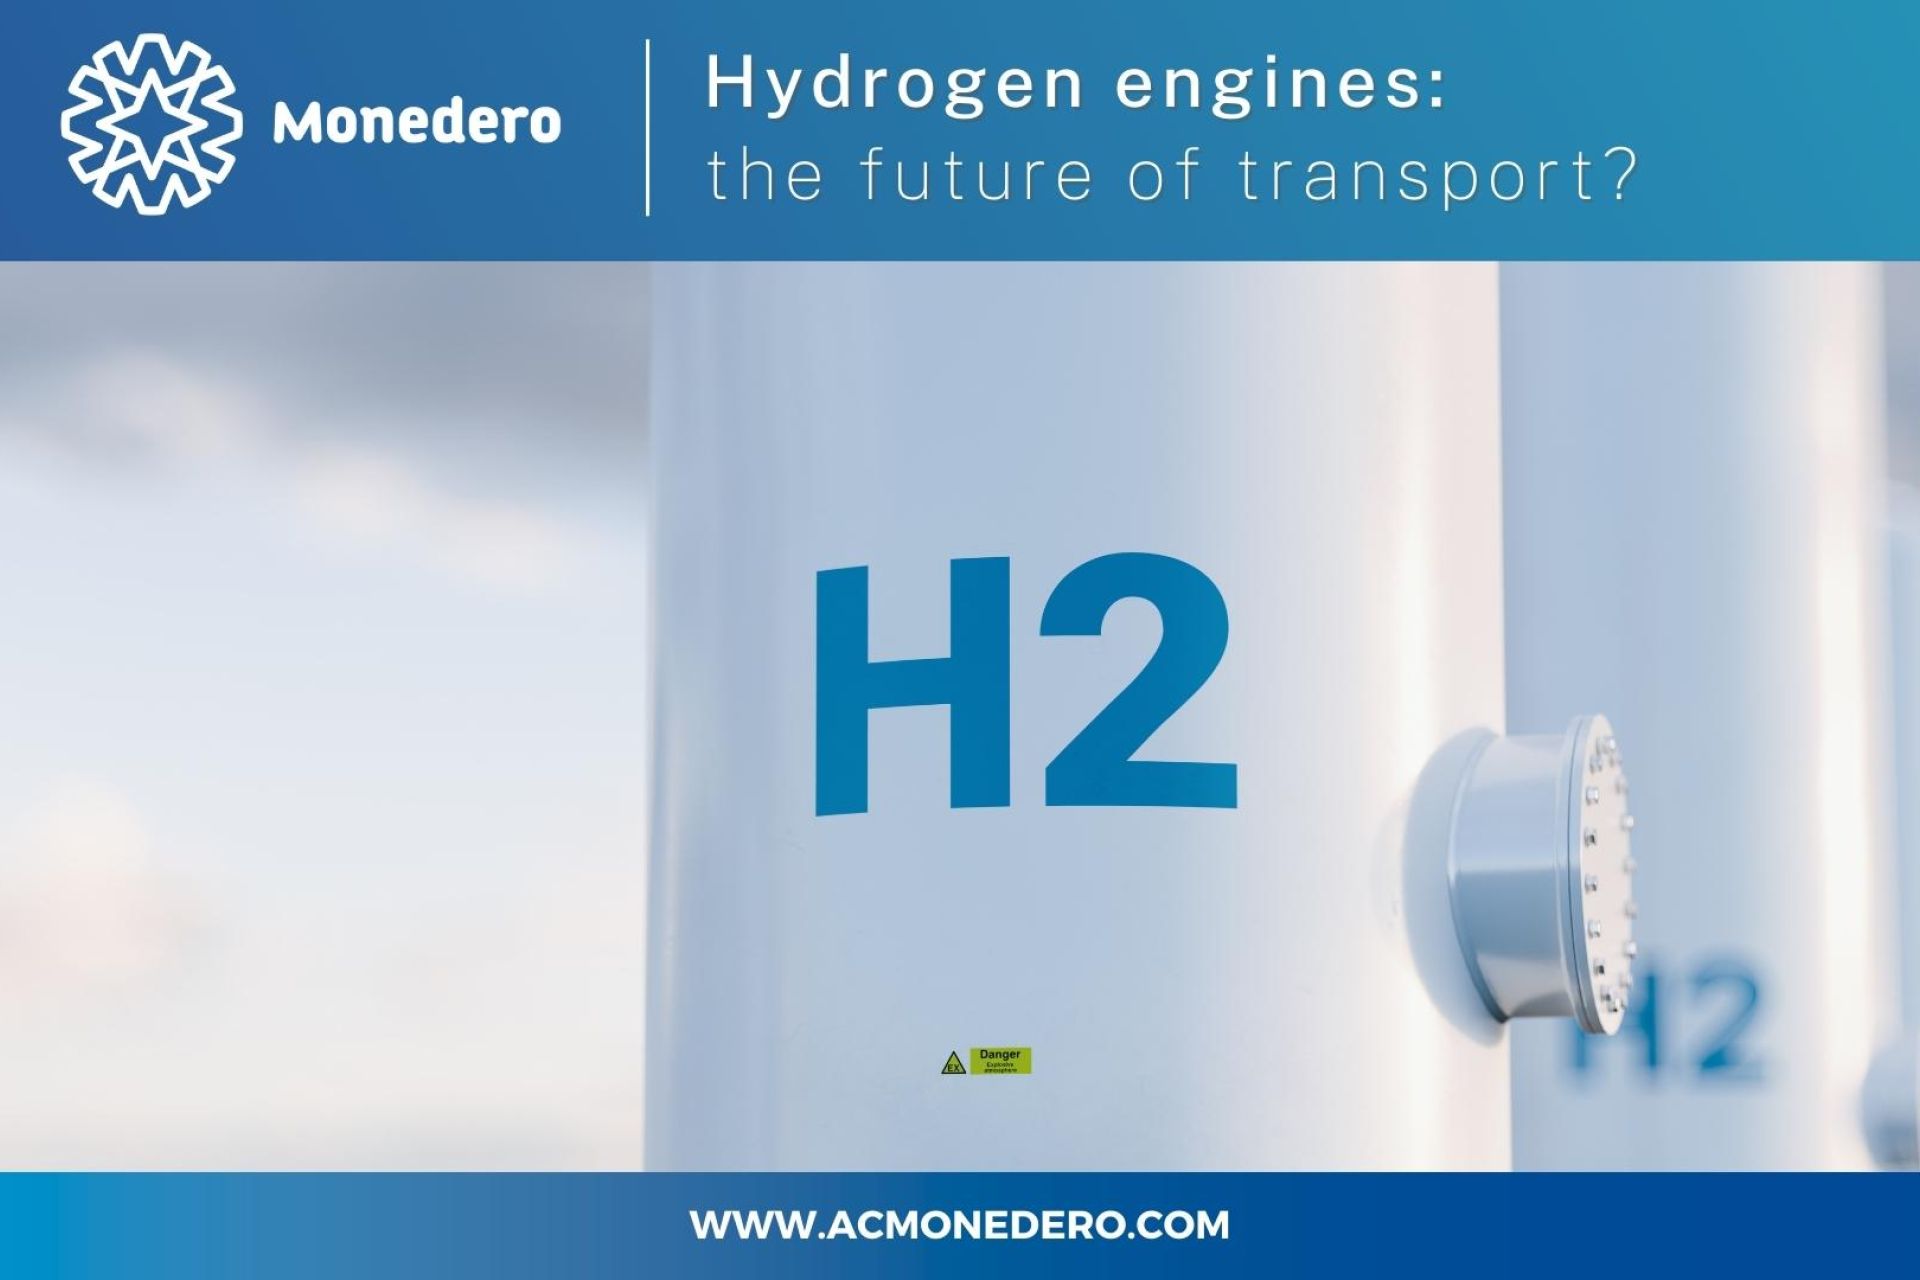 Les moteurs à hydrogène : l'avenir des transports?